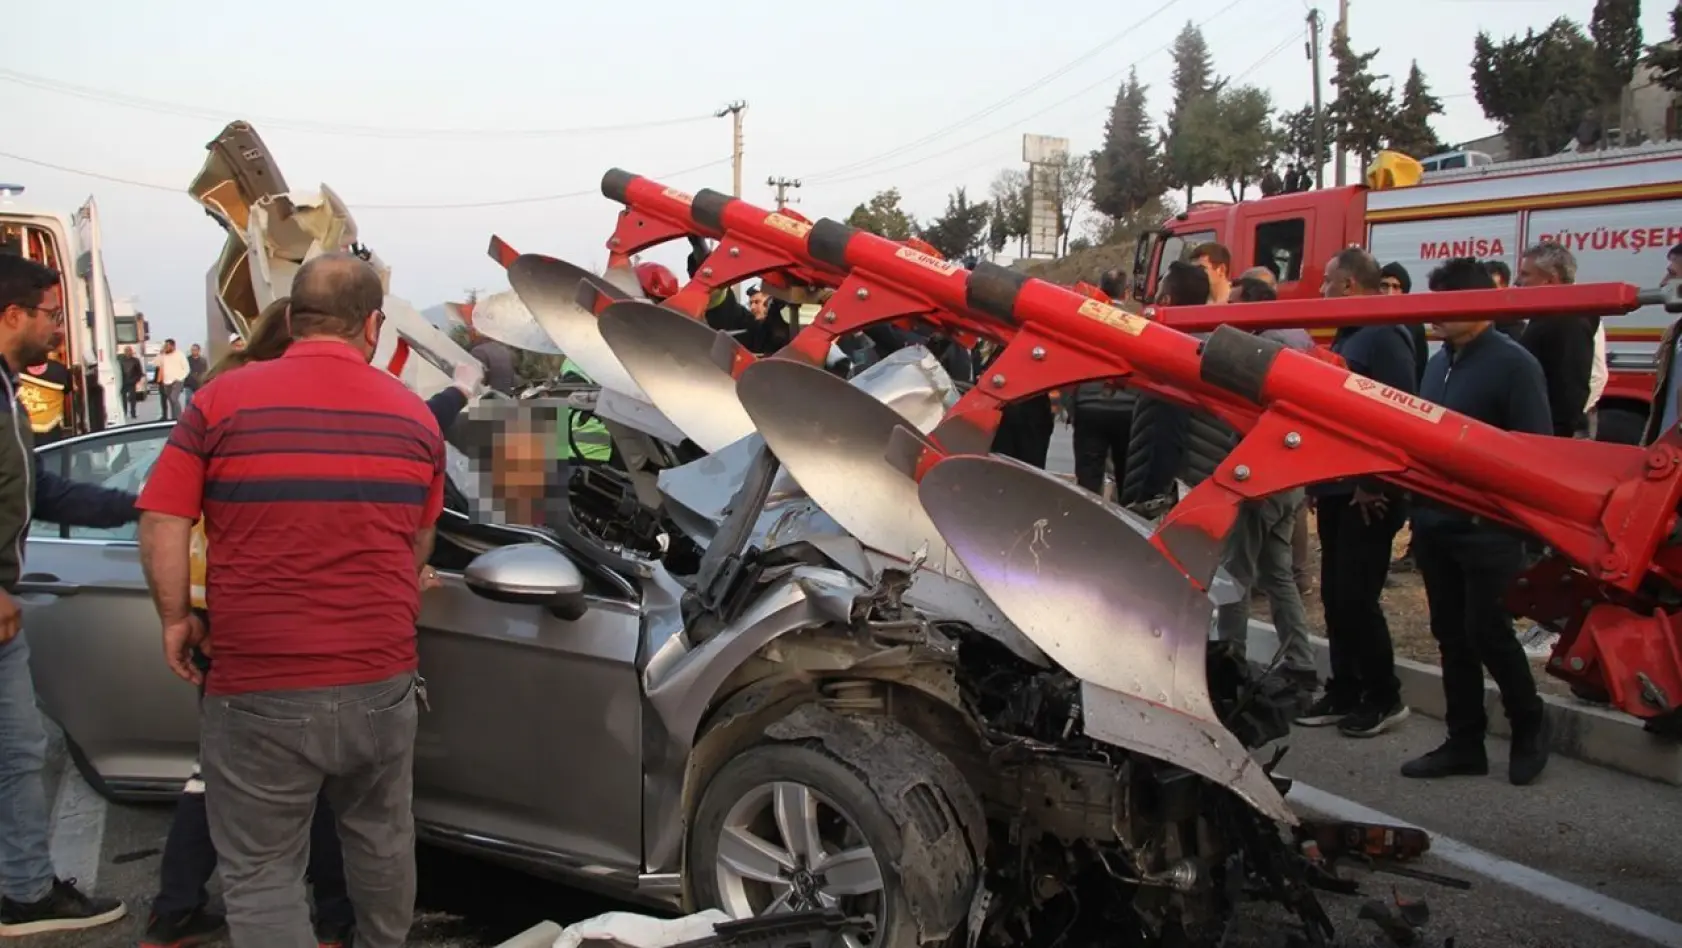 Otomobil pulluk takılı traktöre saplandı: 1 ölü, 4 yaralı